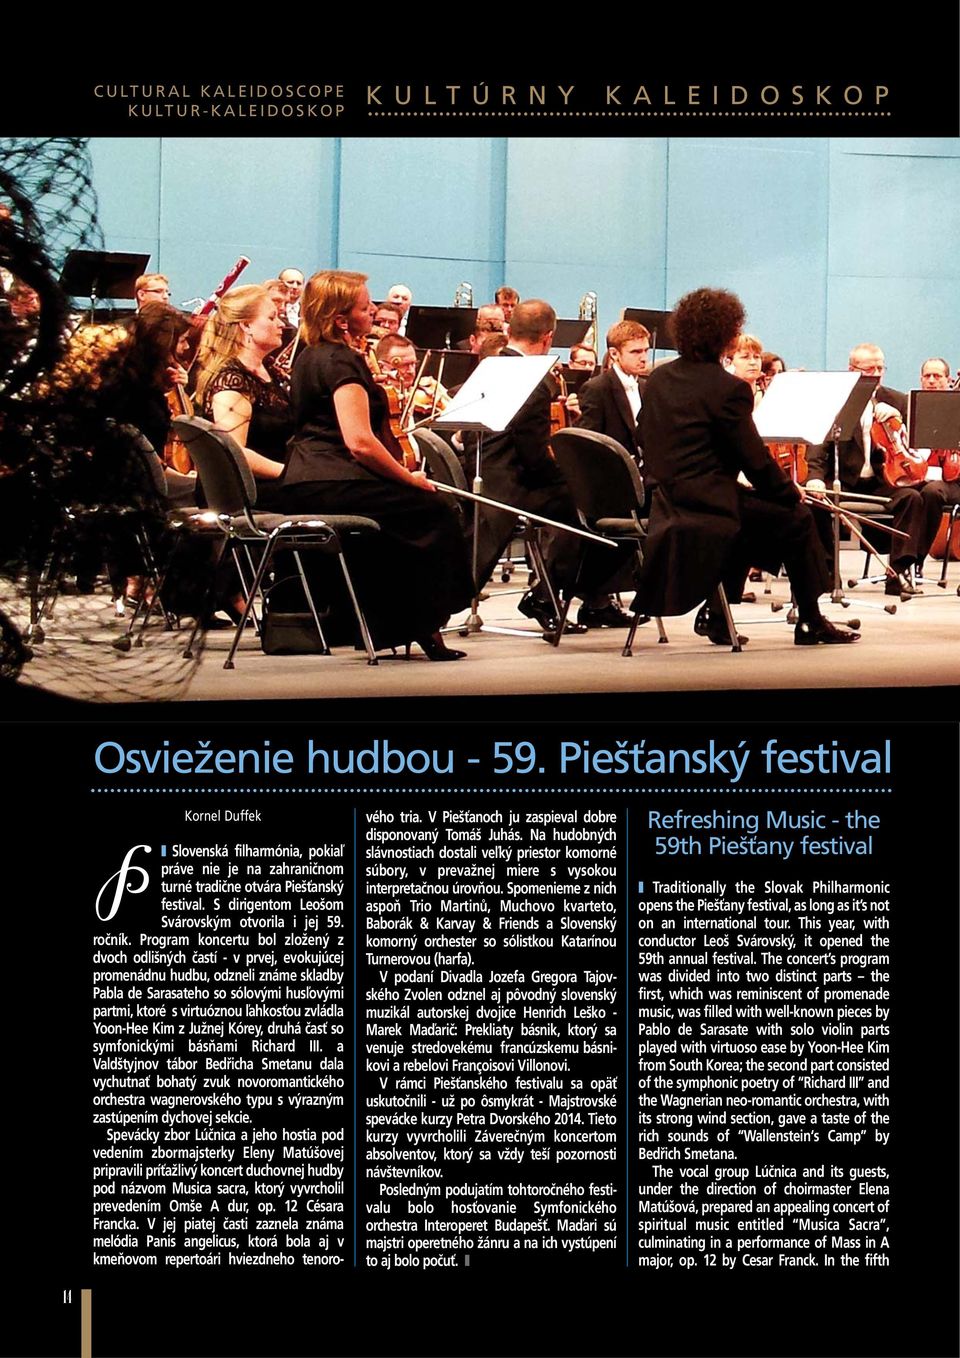 Program koncertu bol zložený z dvoch odlišných častí - v prvej, evokujúcej promenádnu hudbu, odzneli známe skladby Pabla de Sarasateho so sólovými husľovými partmi, ktoré s virtuóznou ľahkosťou